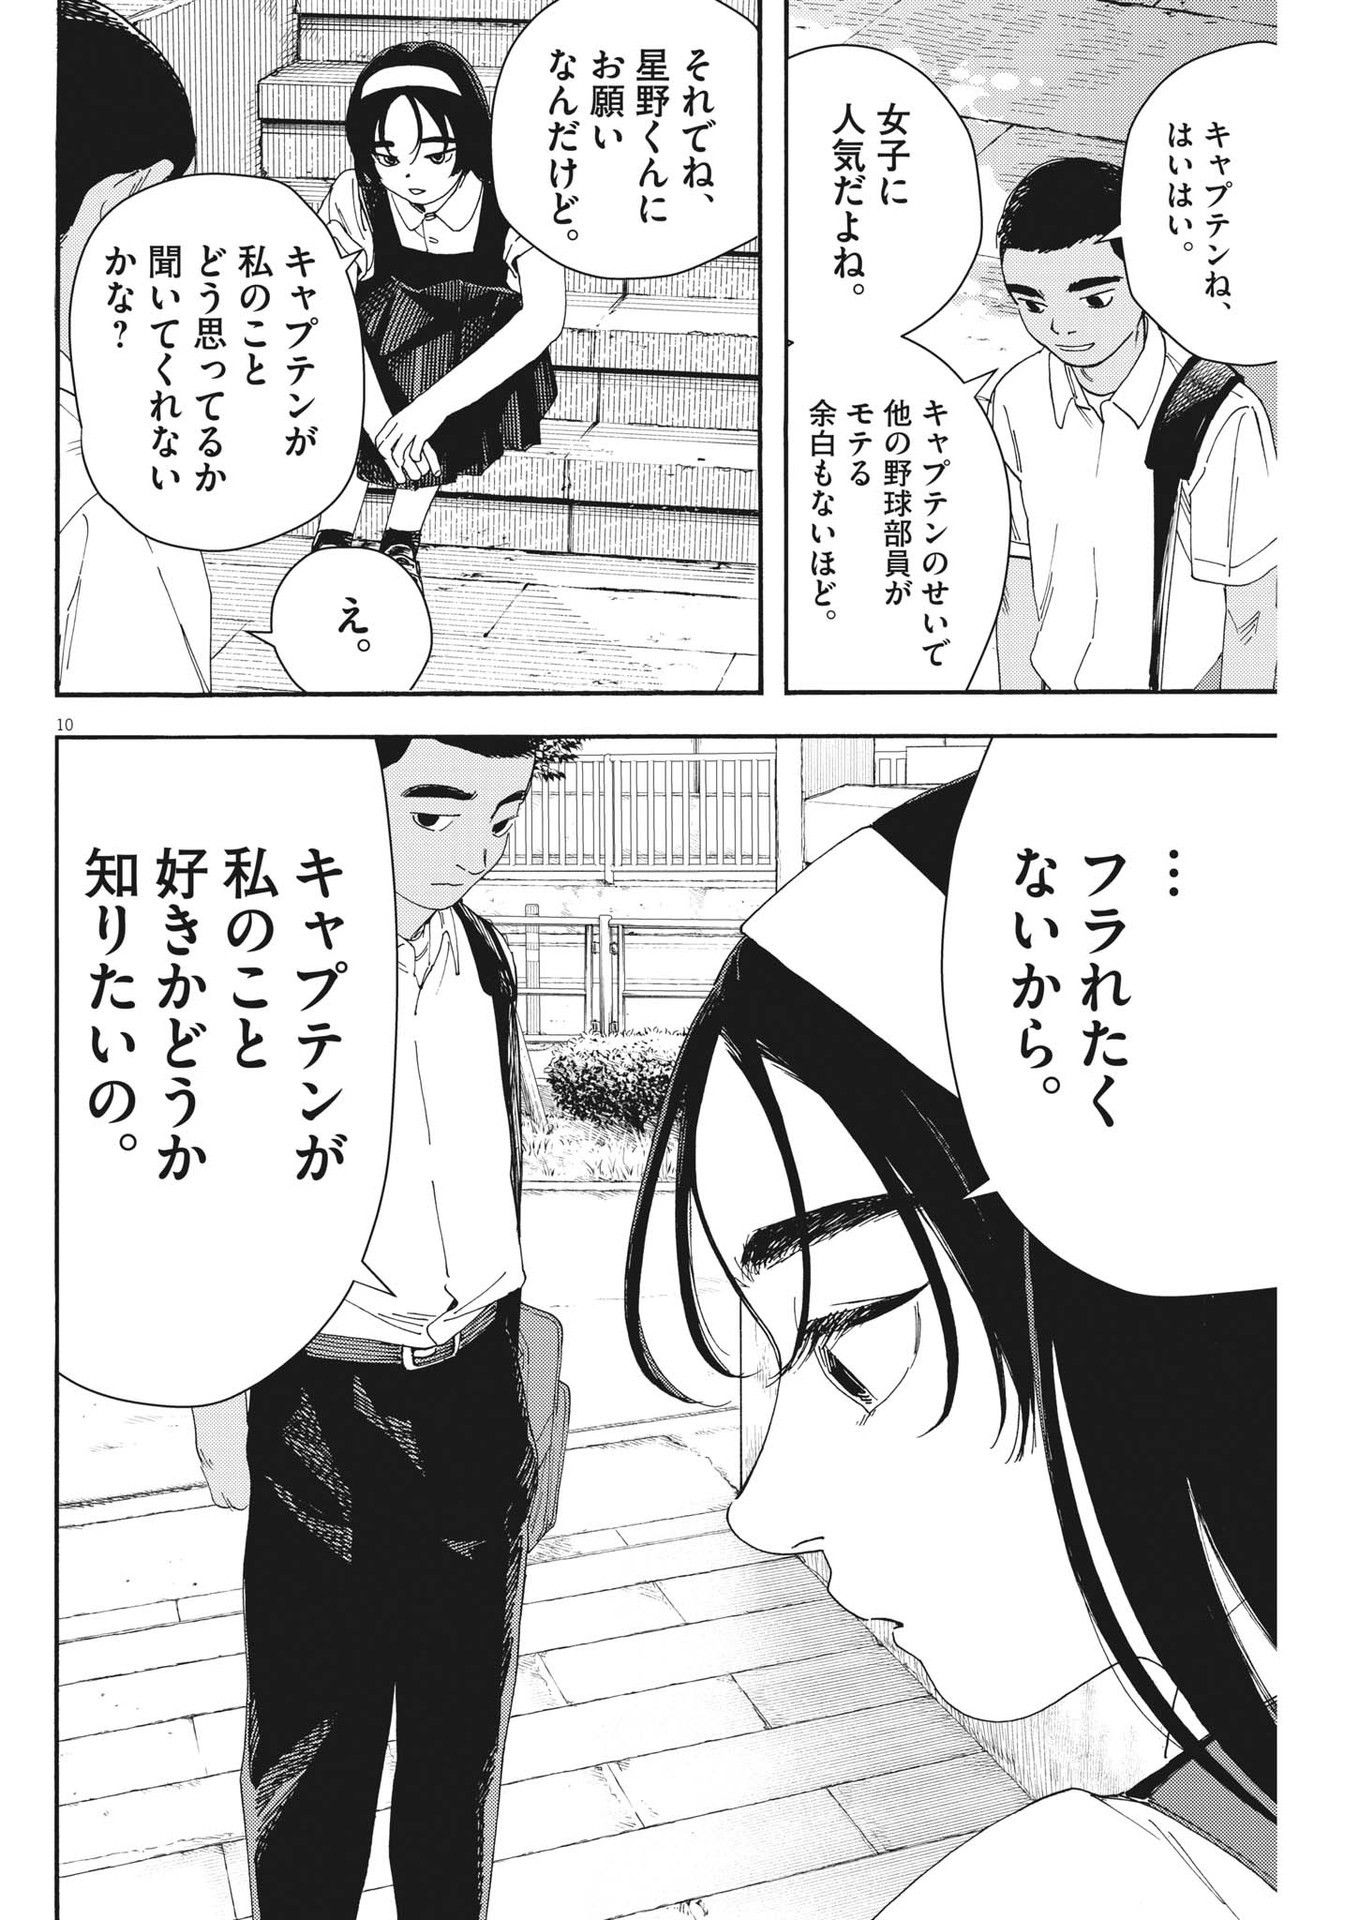 Hoshino-kun, Shitagatte! - Chapter 4 - Page 10